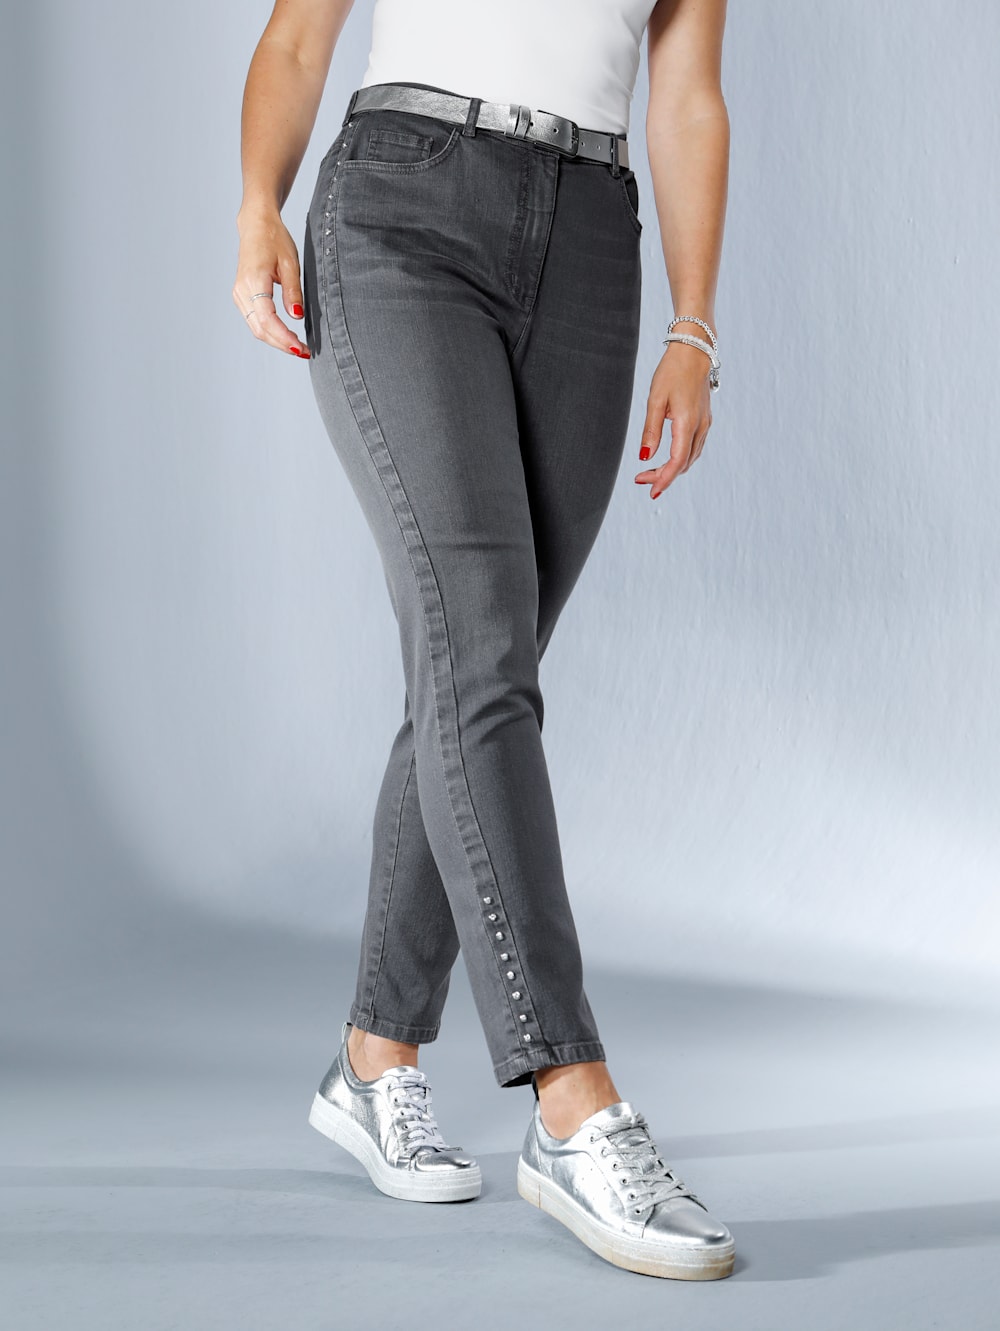 MIAMODA Jeans seitlich mit Strasssteinen besetzt | Mia Moda